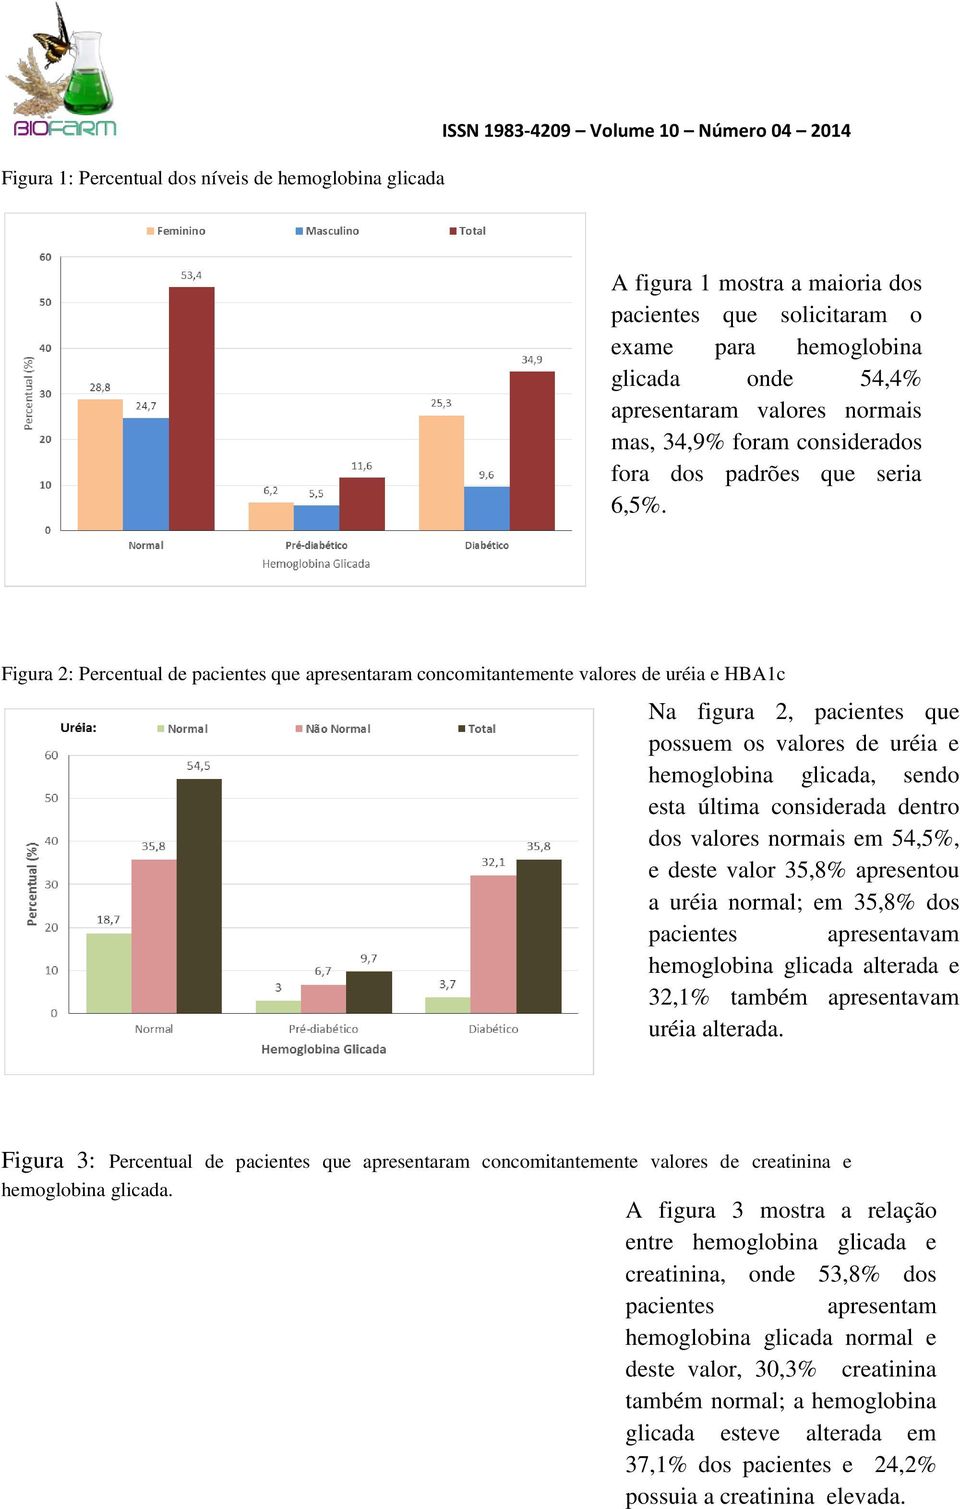 Figura 2: Percentual de pacientes que apresentaram concomitantemente valores de uréia e HBA1c Na figura 2, pacientes que possuem os valores de uréia e hemoglobina glicada, sendo esta última